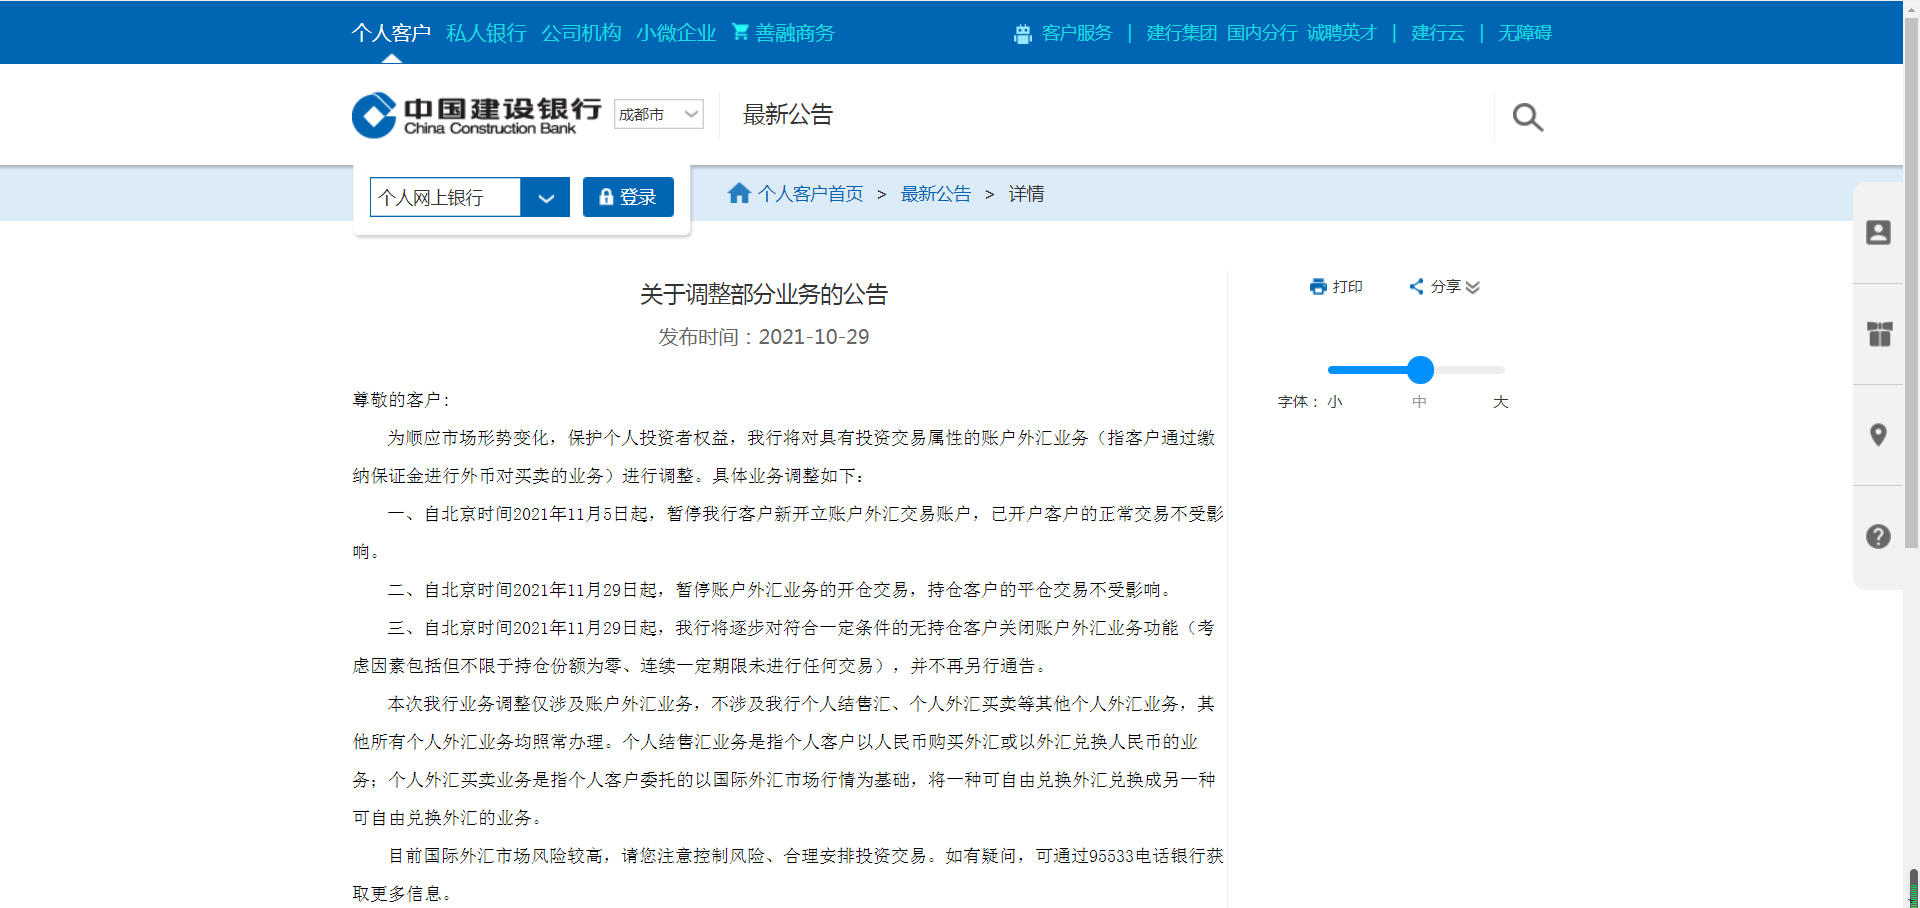 天游平台注册地址中国建设银行发布重要公告，部分业务将调整